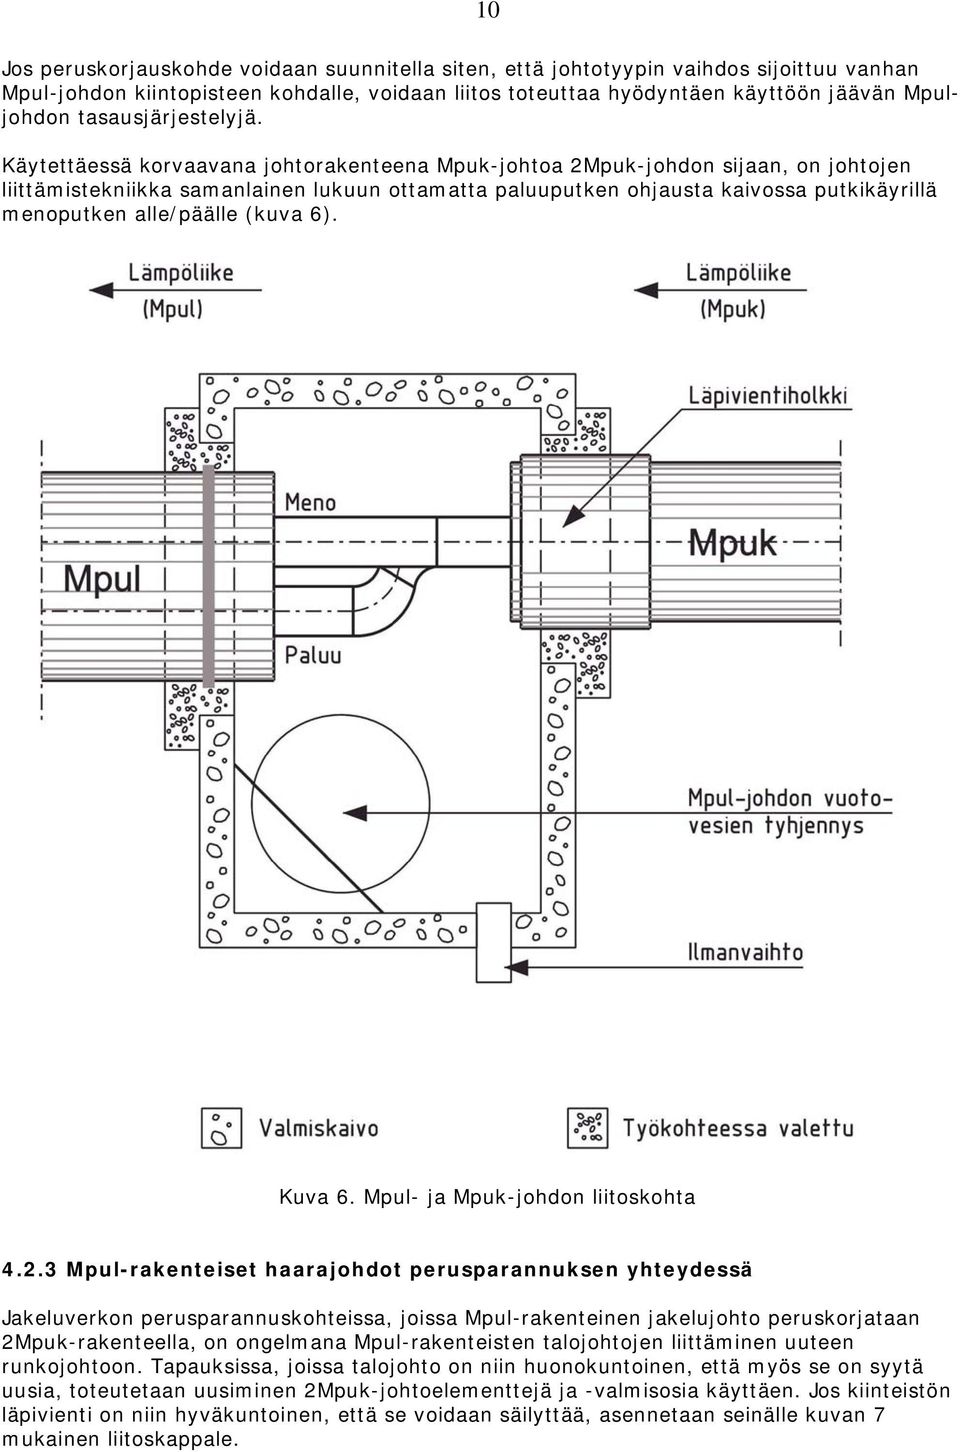 Käytettäessä korvaavana johtorakenteena Mpuk-johtoa 2Mpuk-johdon sijaan, on johtojen liittämistekniikka samanlainen lukuun ottamatta paluuputken ohjausta kaivossa putkikäyrillä menoputken alle/päälle